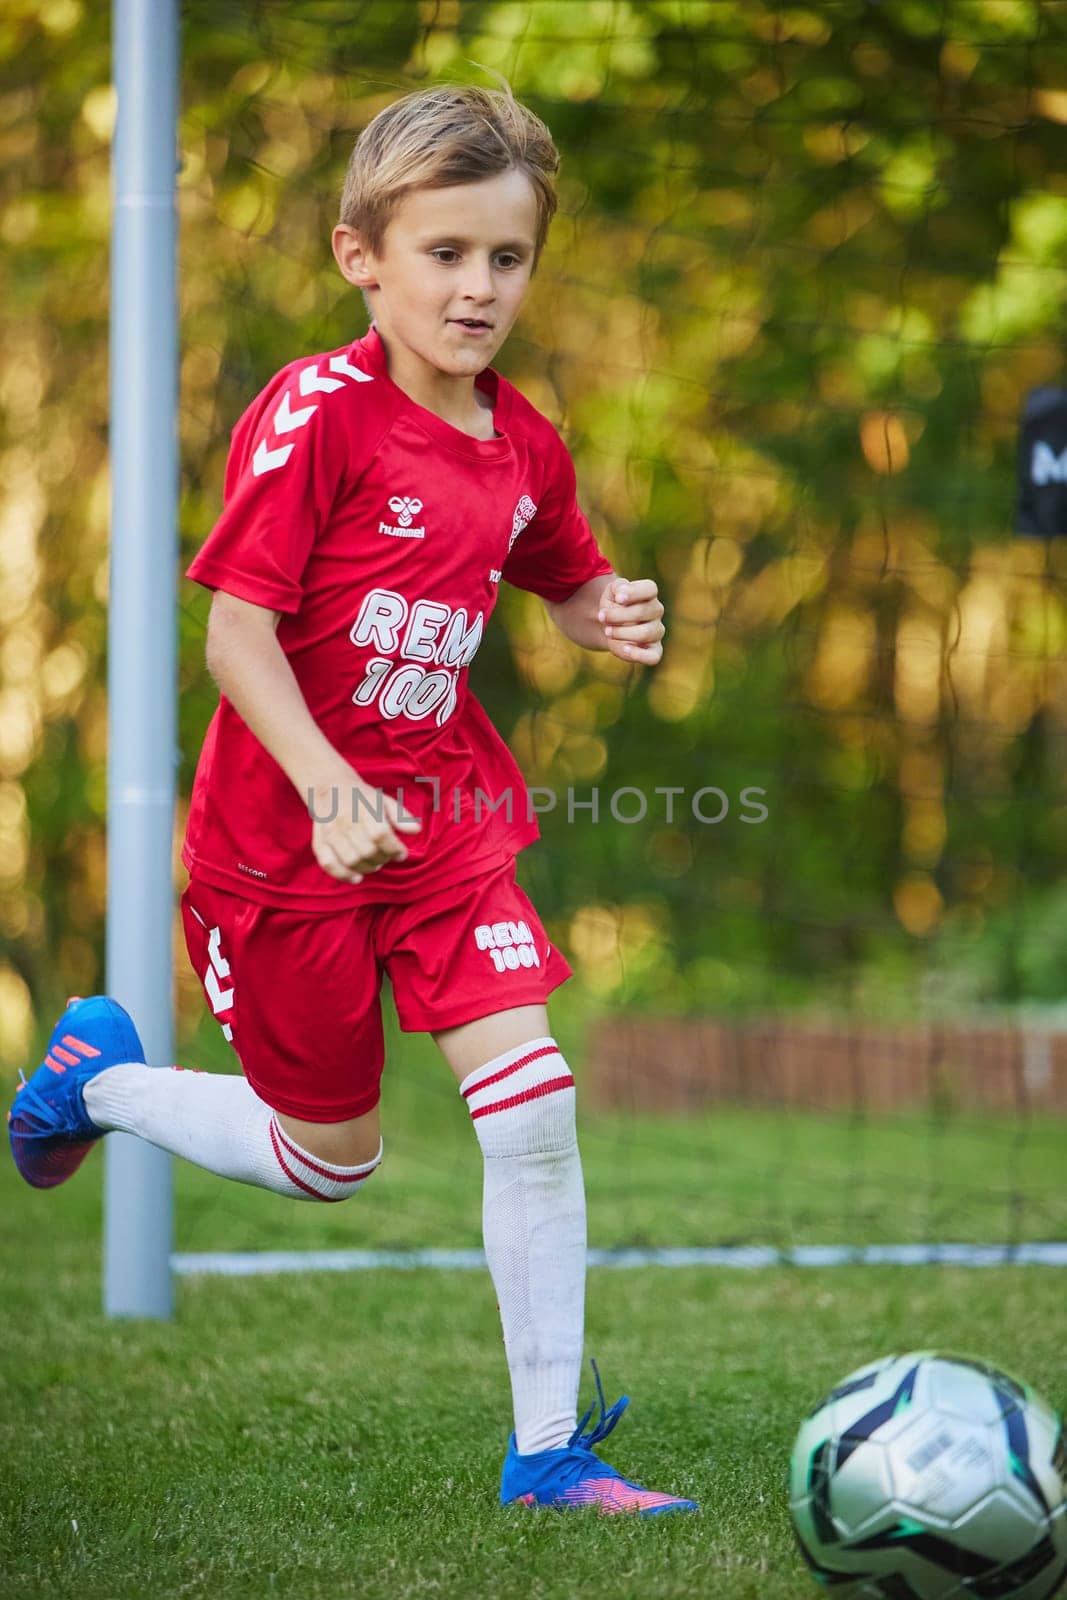 Ornhoj, Denmark, July 4, 2023: Boy goalkeeper in motion.